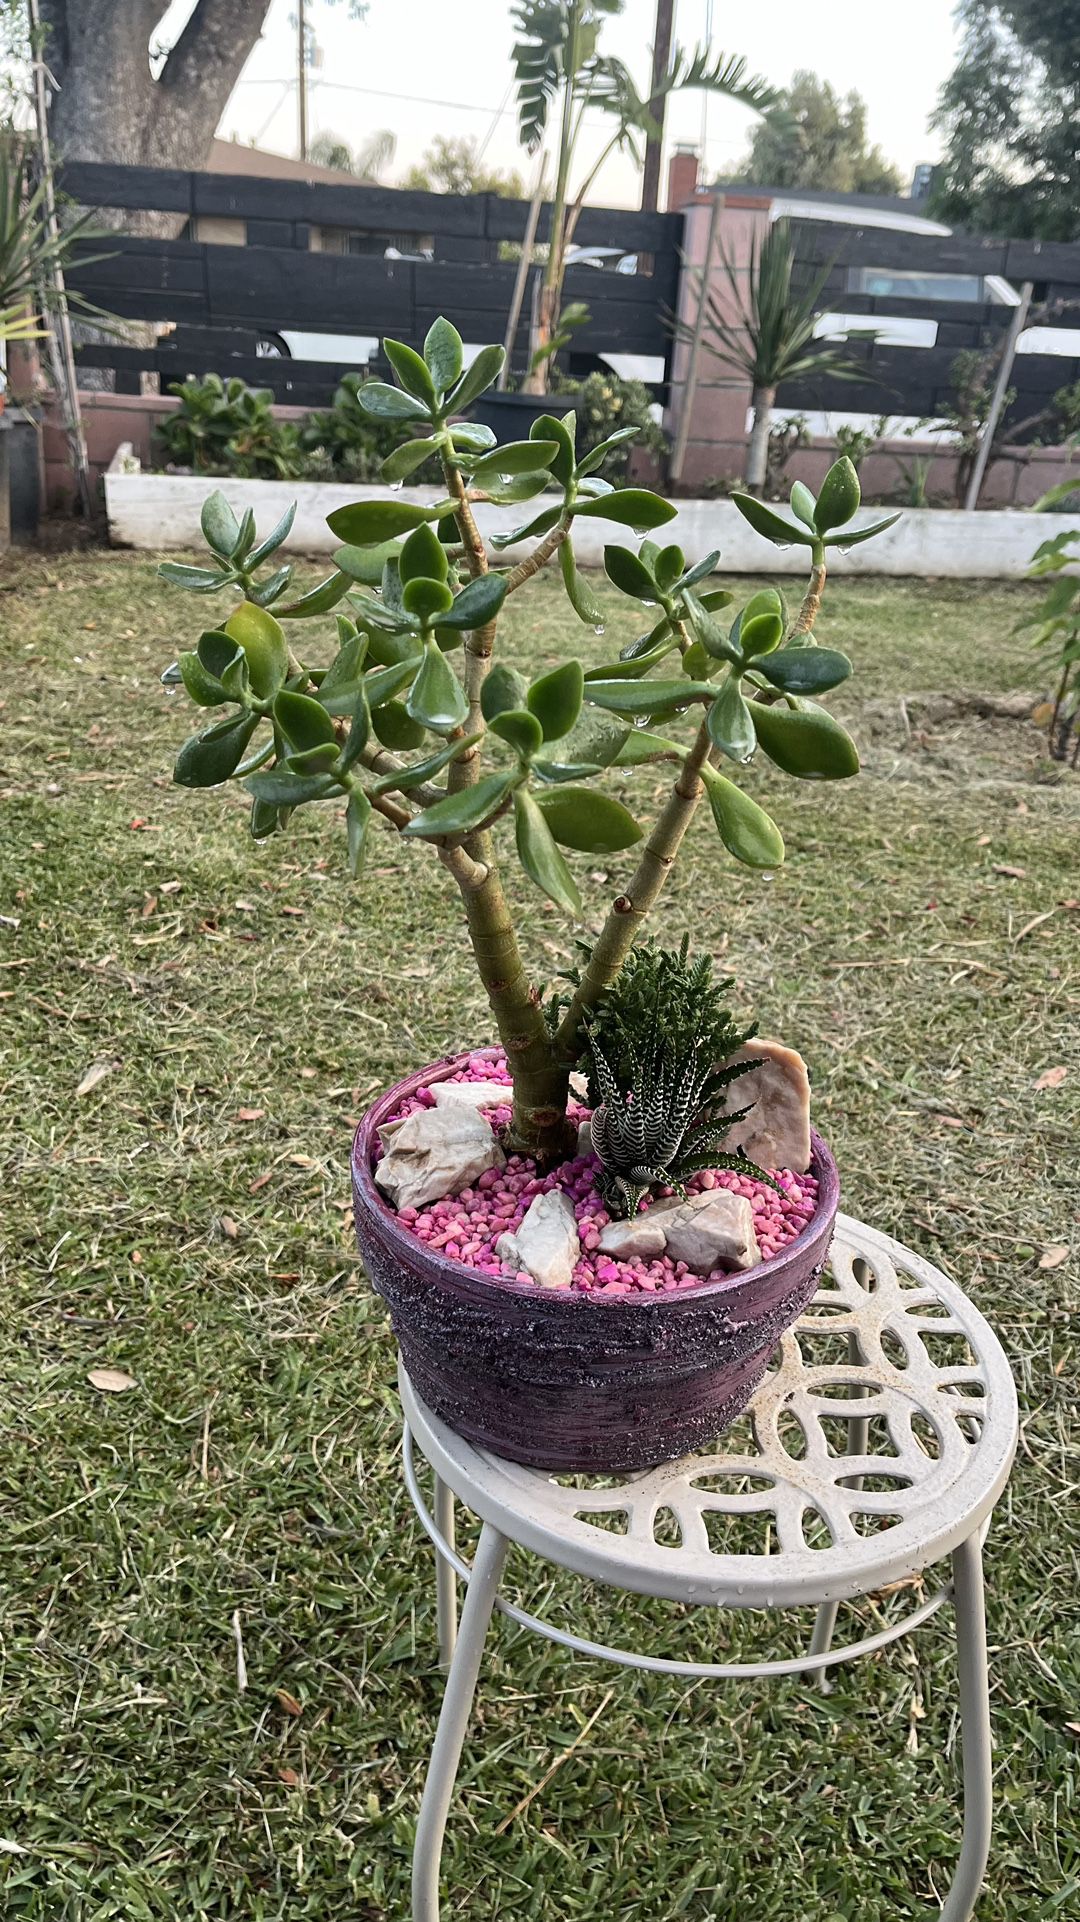 Very Healthy Jade Good Luck Tree In Rustic Vase 